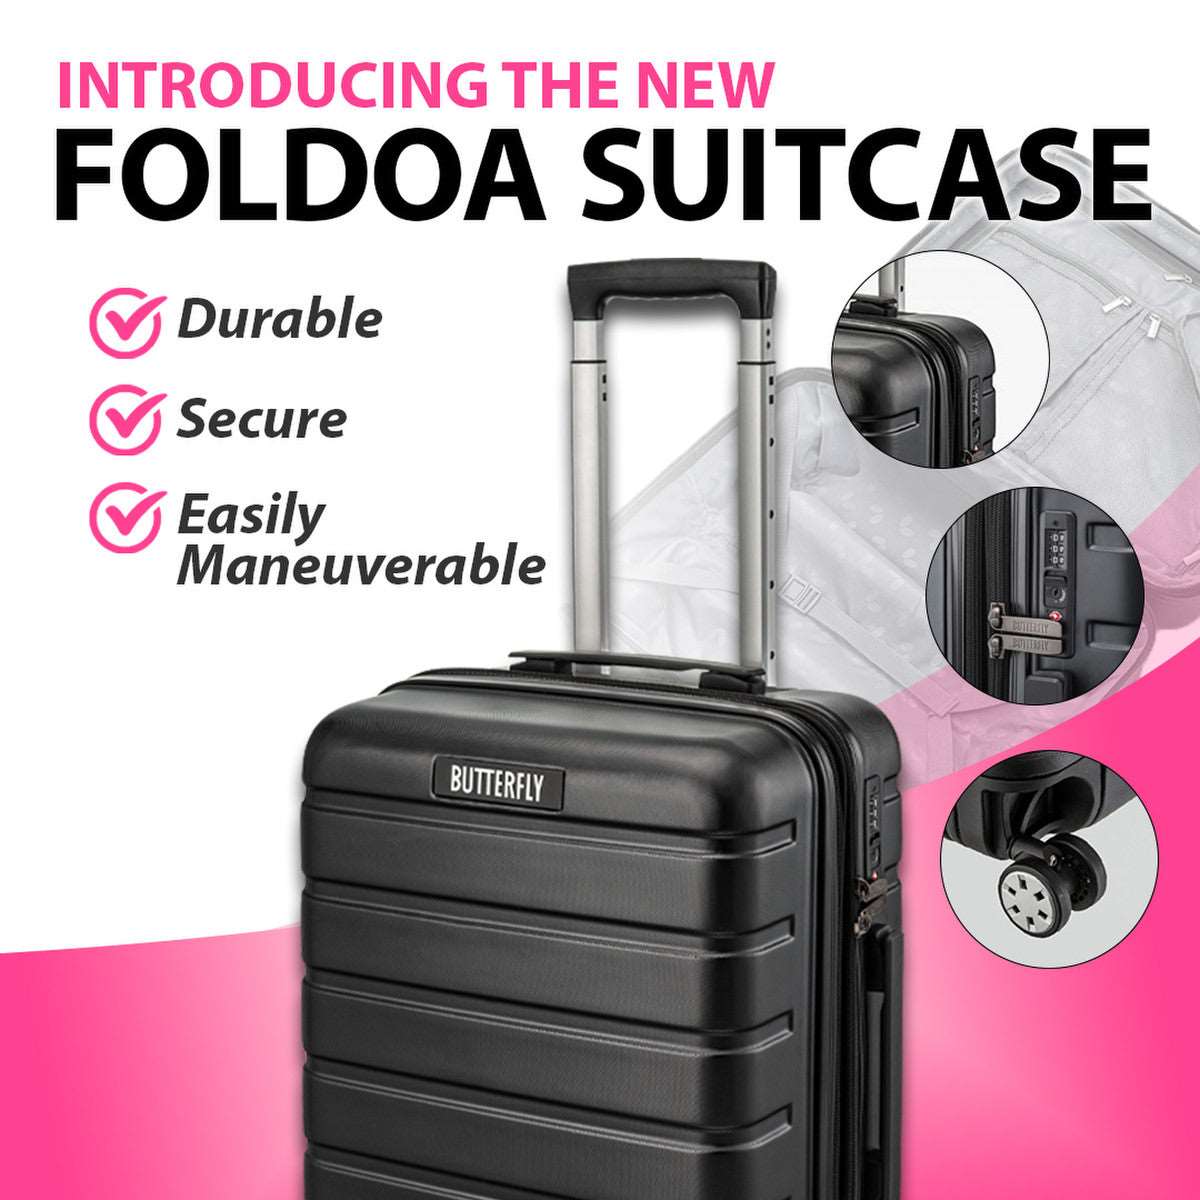 Foldoa Suitcase